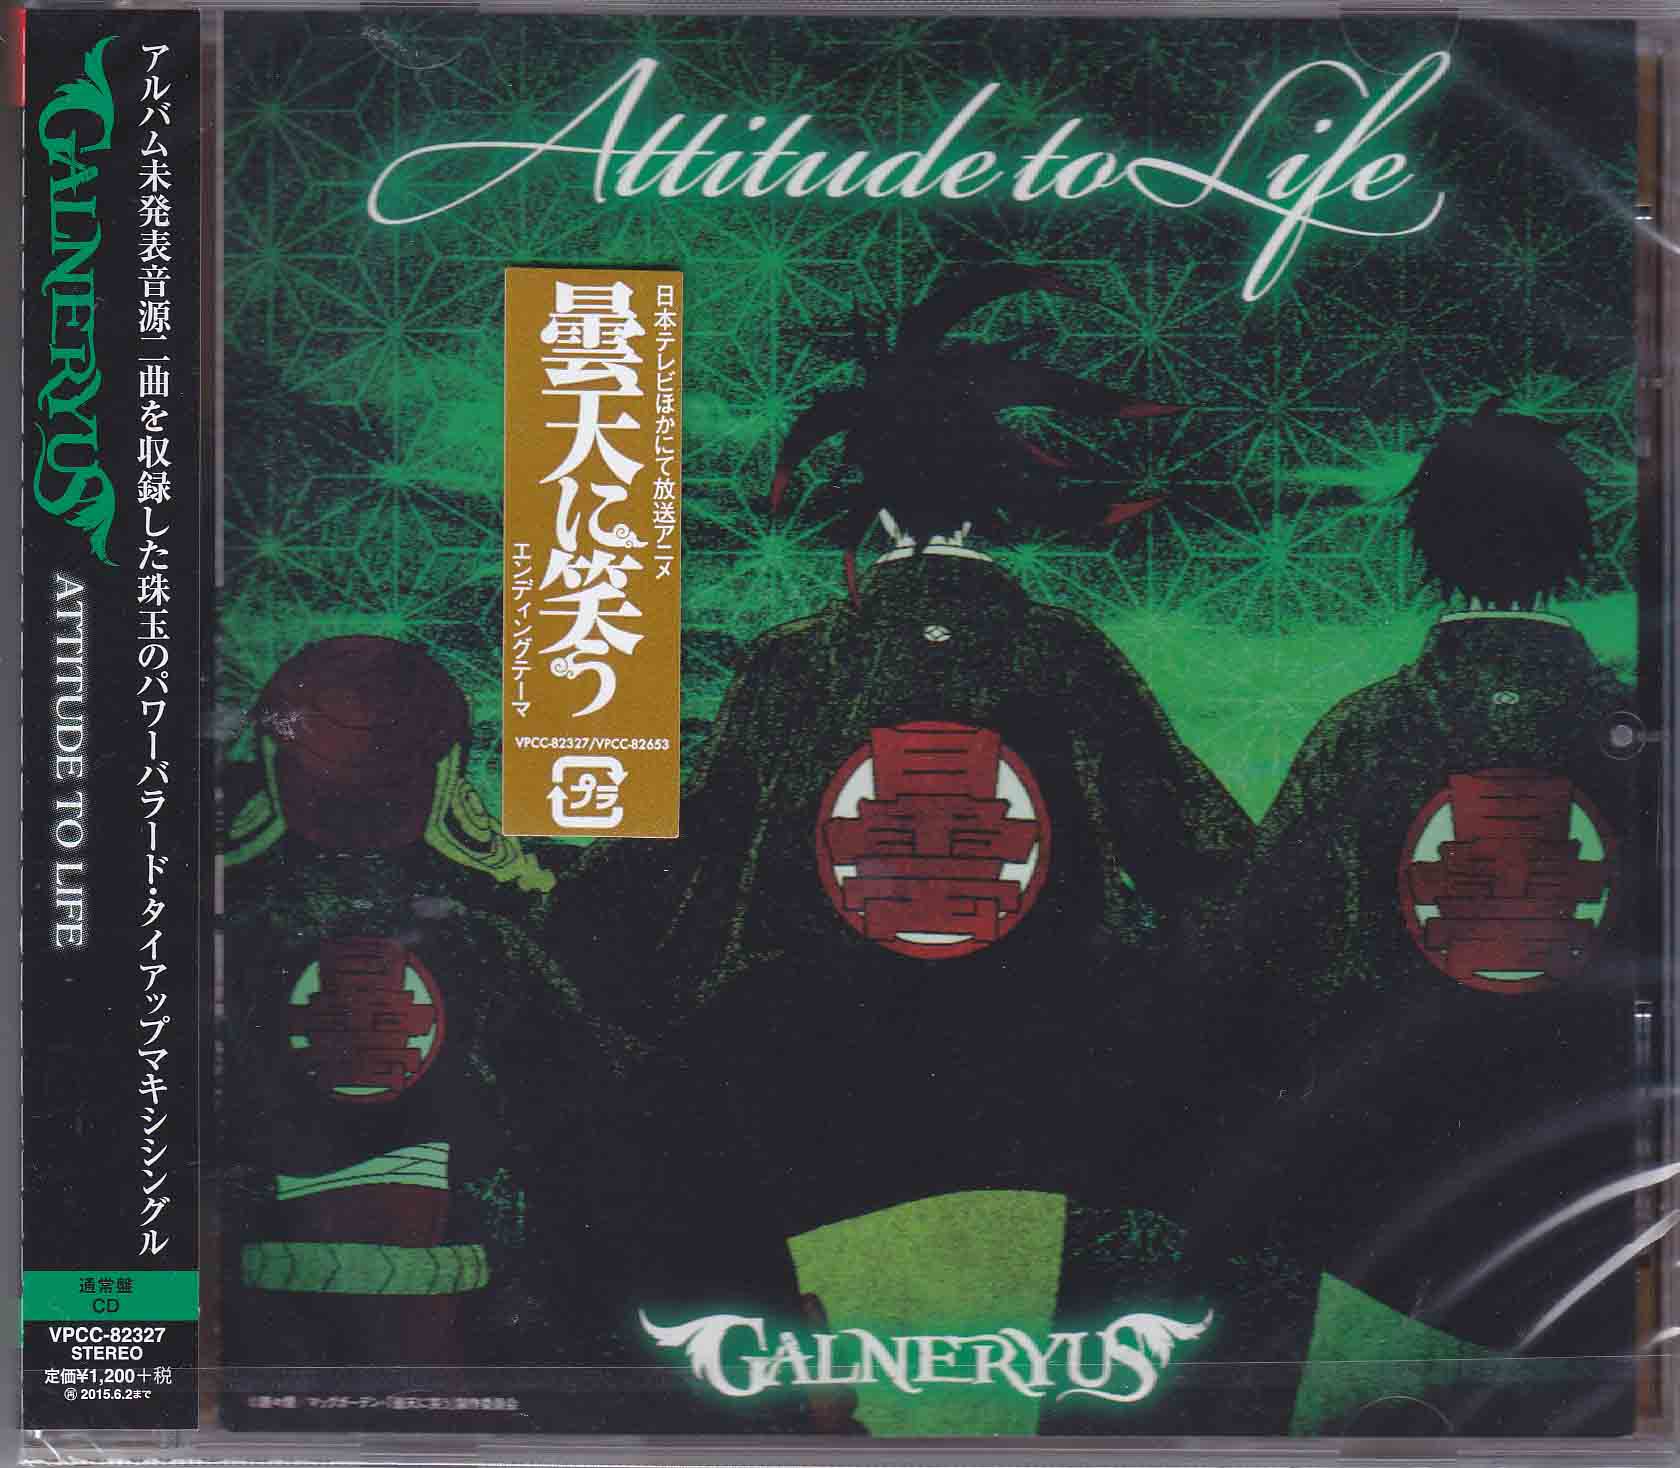 GALNERYUS ( ガルネリウス )  の CD ATTITUDE TO LIFE【通常盤】